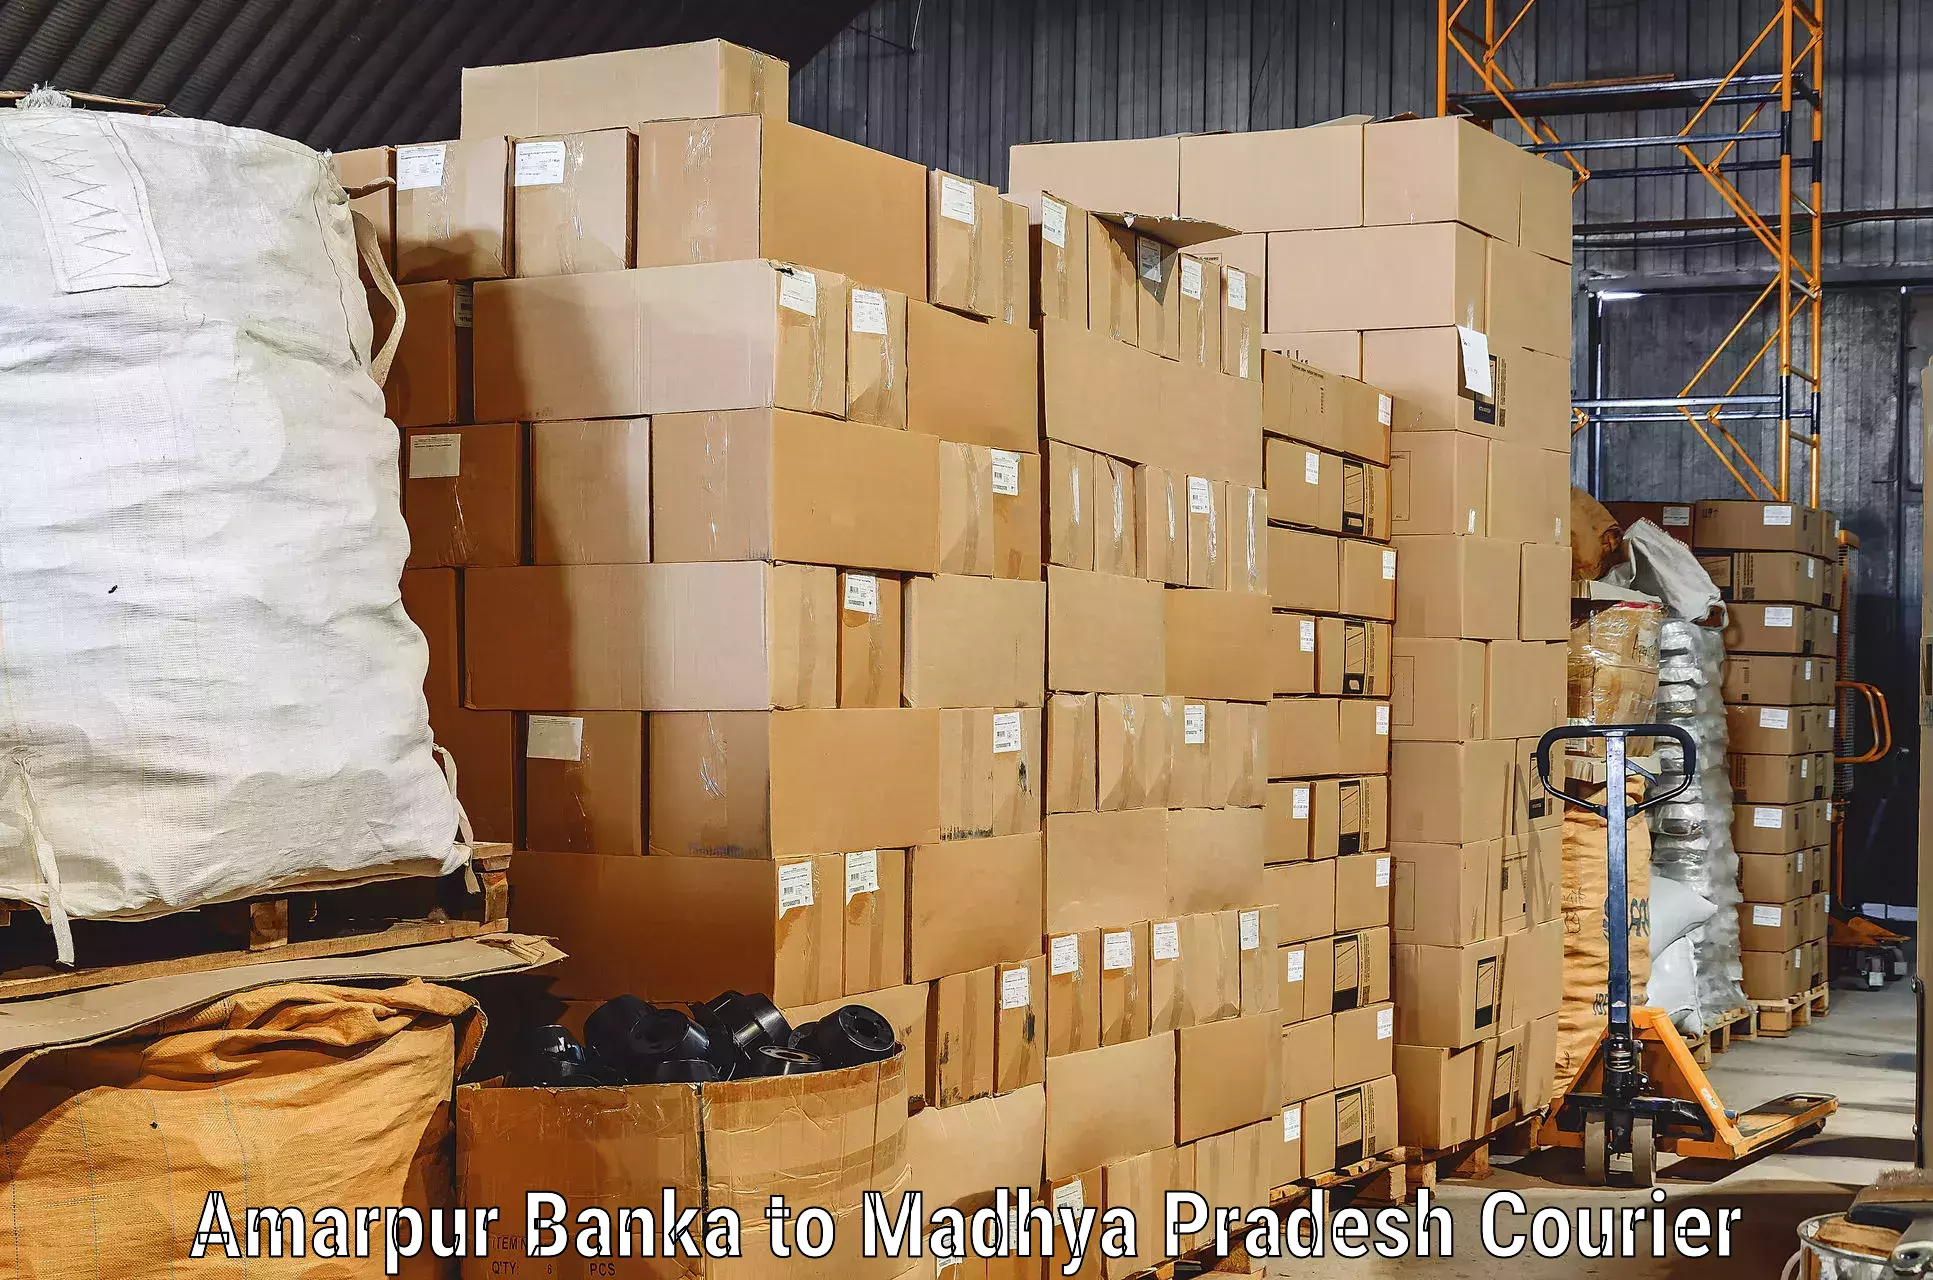 Furniture transport professionals Amarpur Banka to Athner